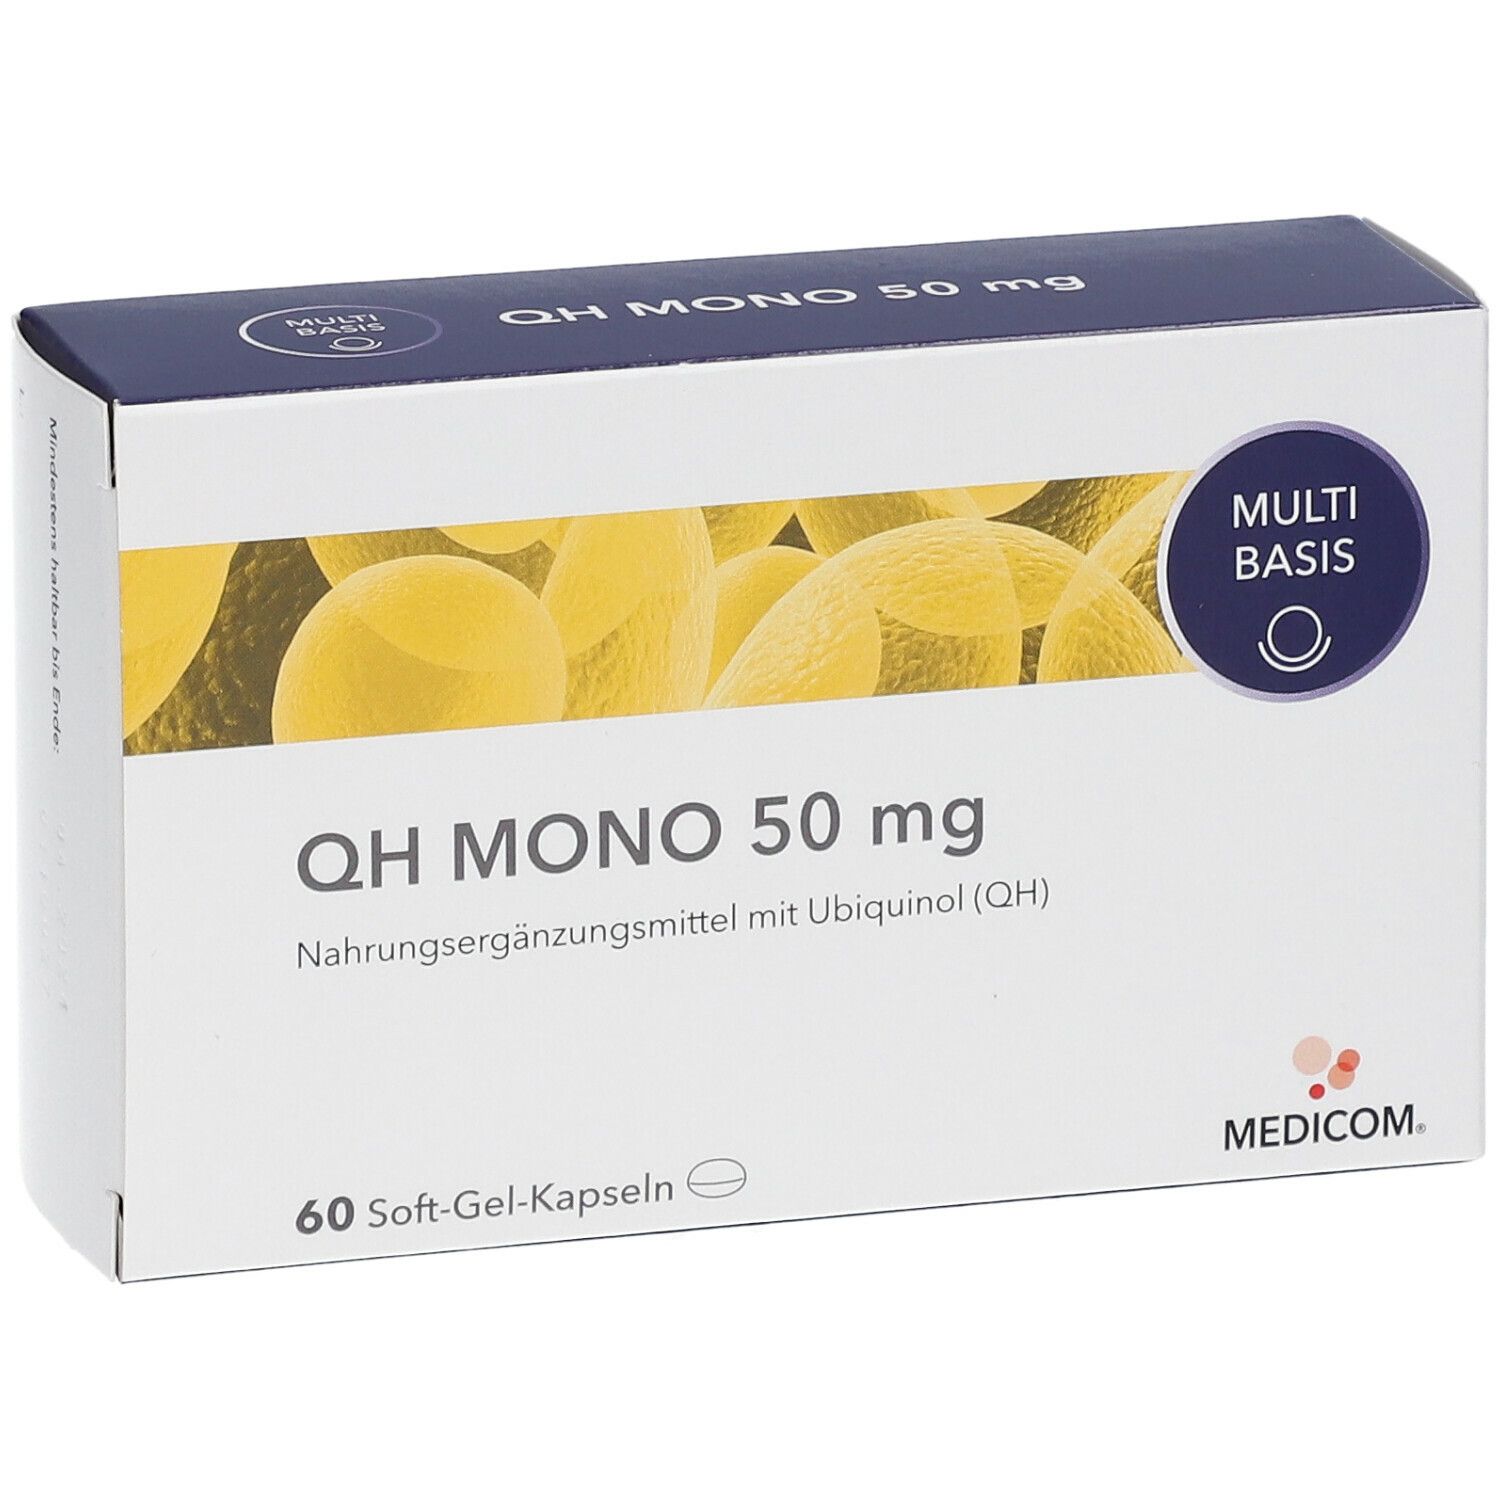 MEDICOM ® QH  MONO 50 mg